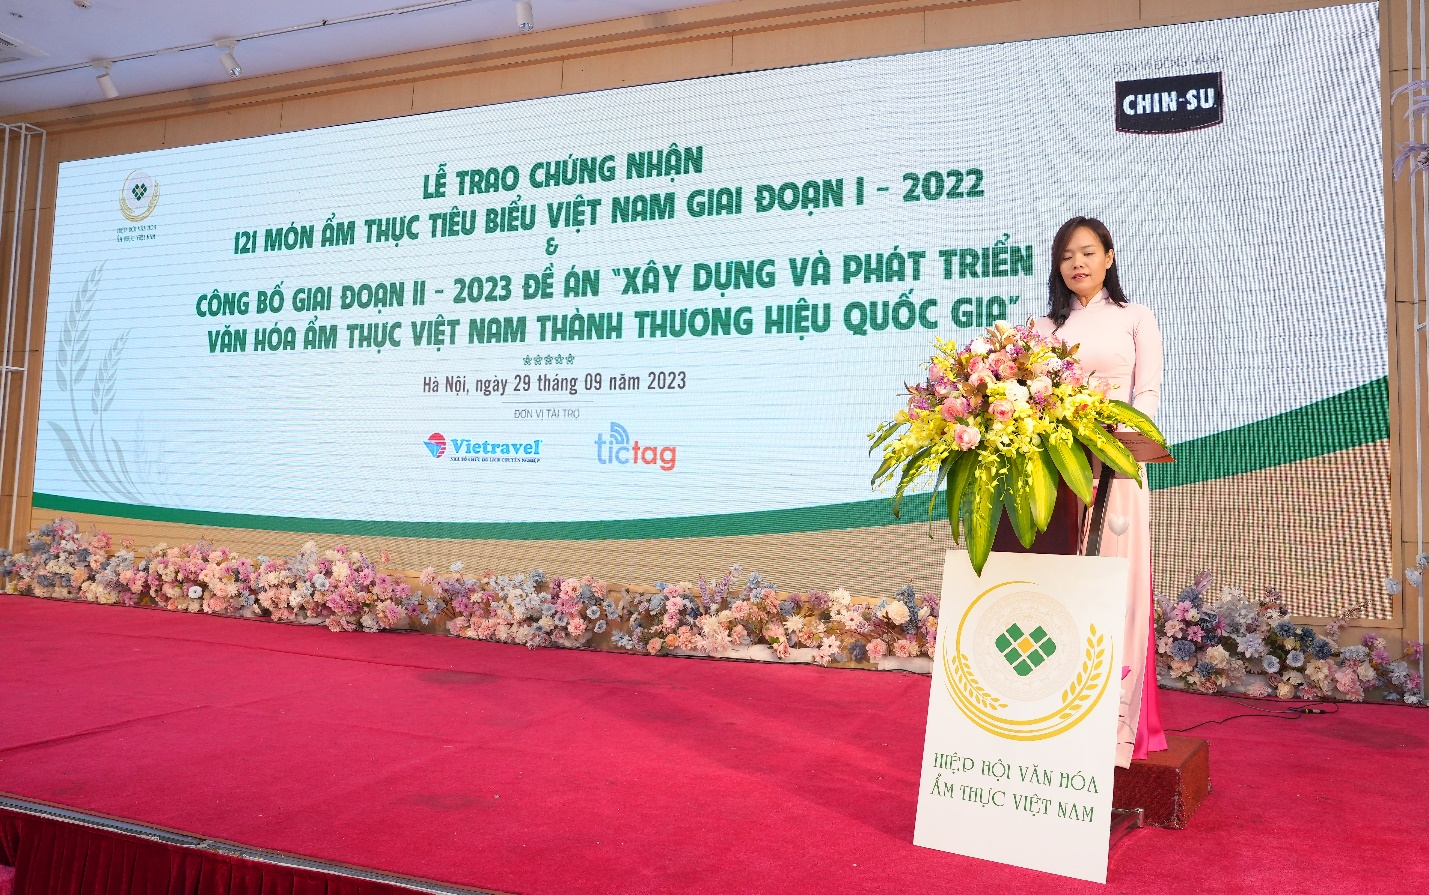 CHIN-SU đồng hành cùng Hiệp hội Văn hóa Ẩm thực Việt Nam vinh danh 121 món ăn tiêu biểu năm 2022 - Ảnh 3.